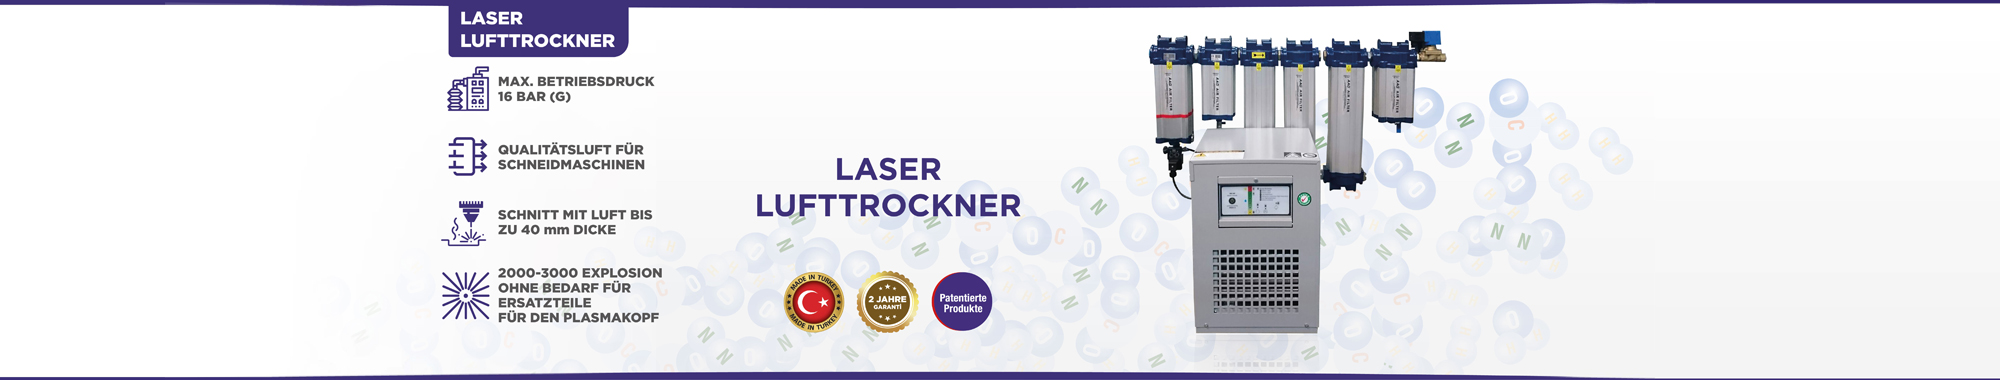 Laser-Lufttrockner